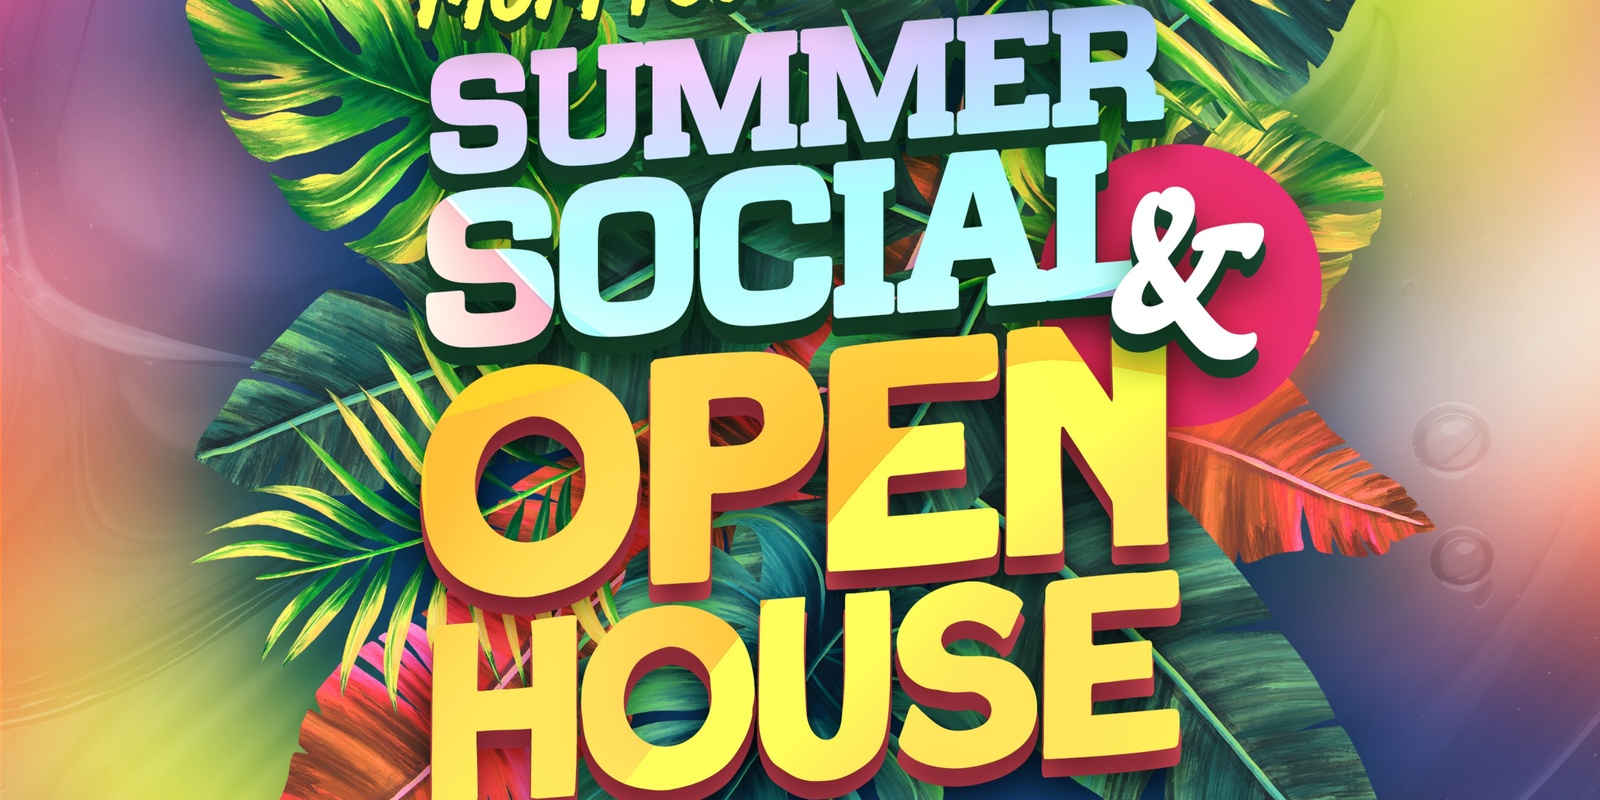 Banner image for Summer Social & Open House 